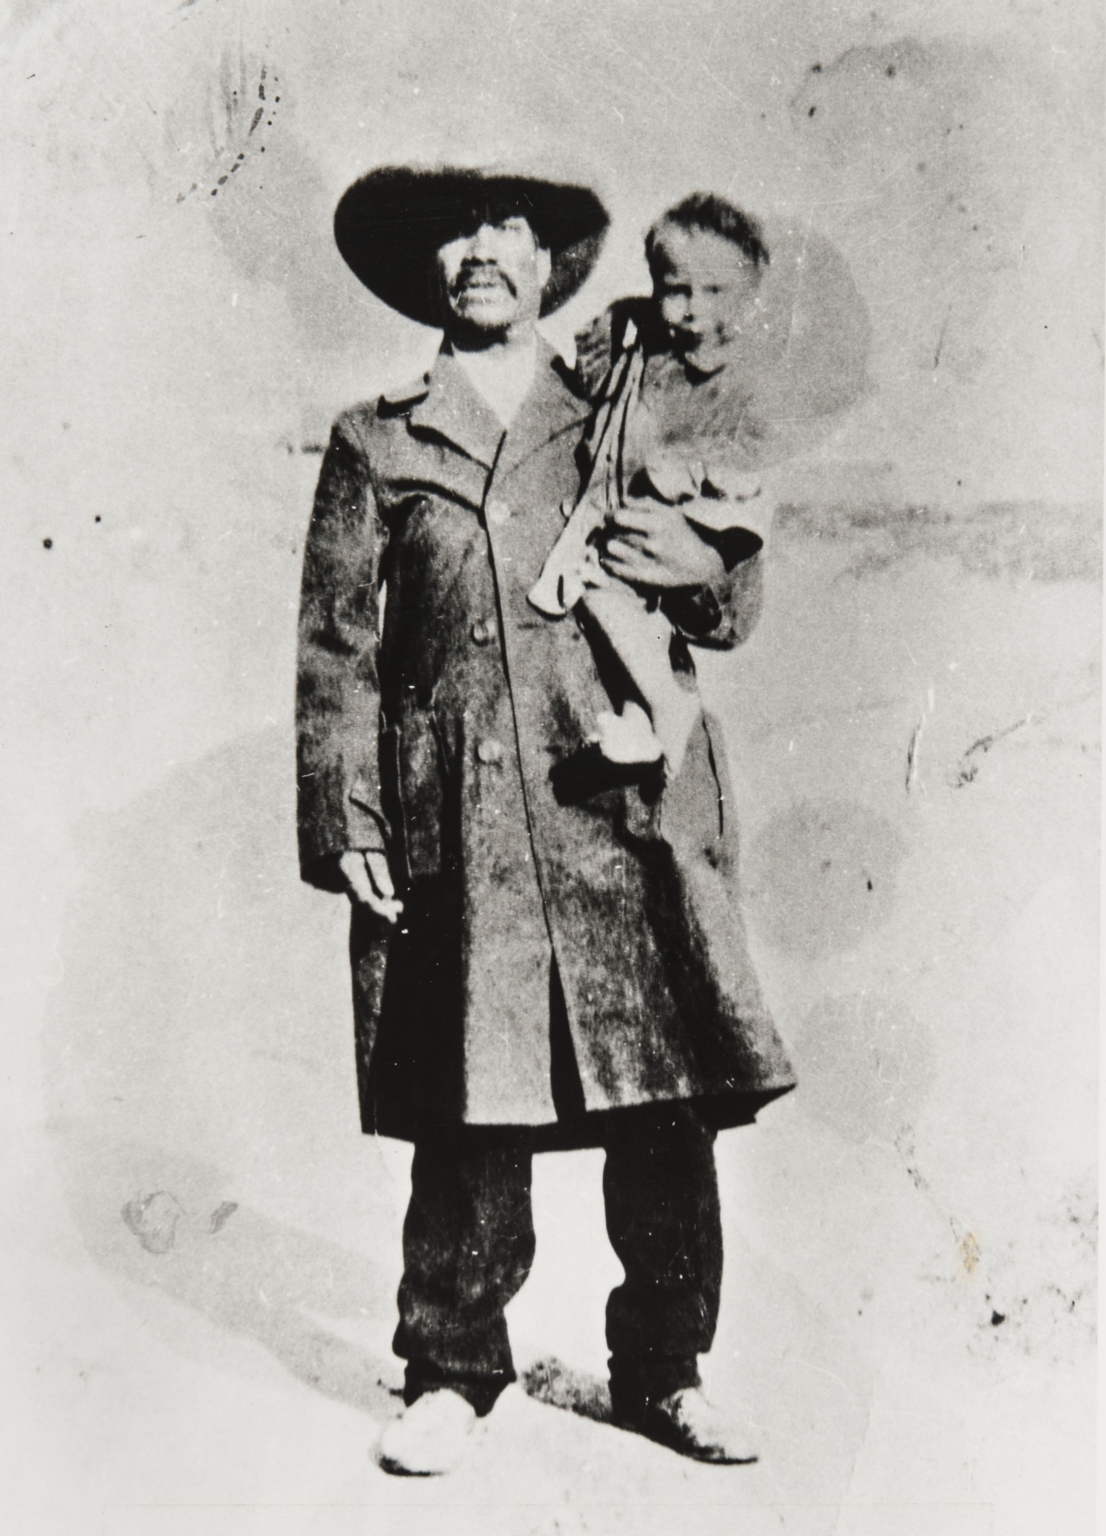 John Trejo's grandfather a Pancho Villa soldier.